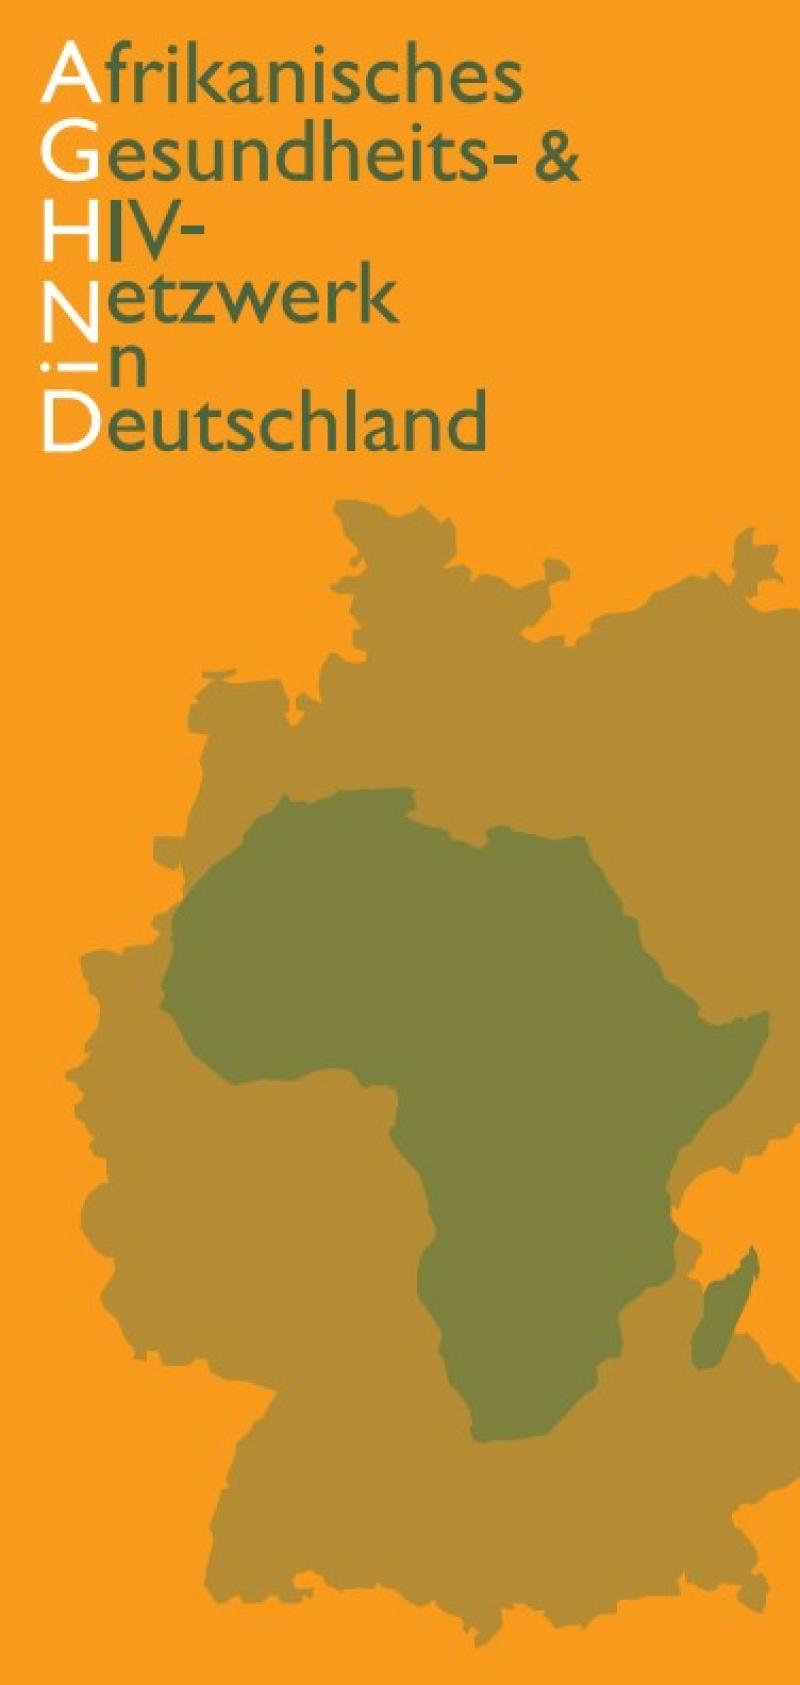 AGHNiD - Afrikanisches Gesundheits- und HIV-Netzwerk in Deutschland